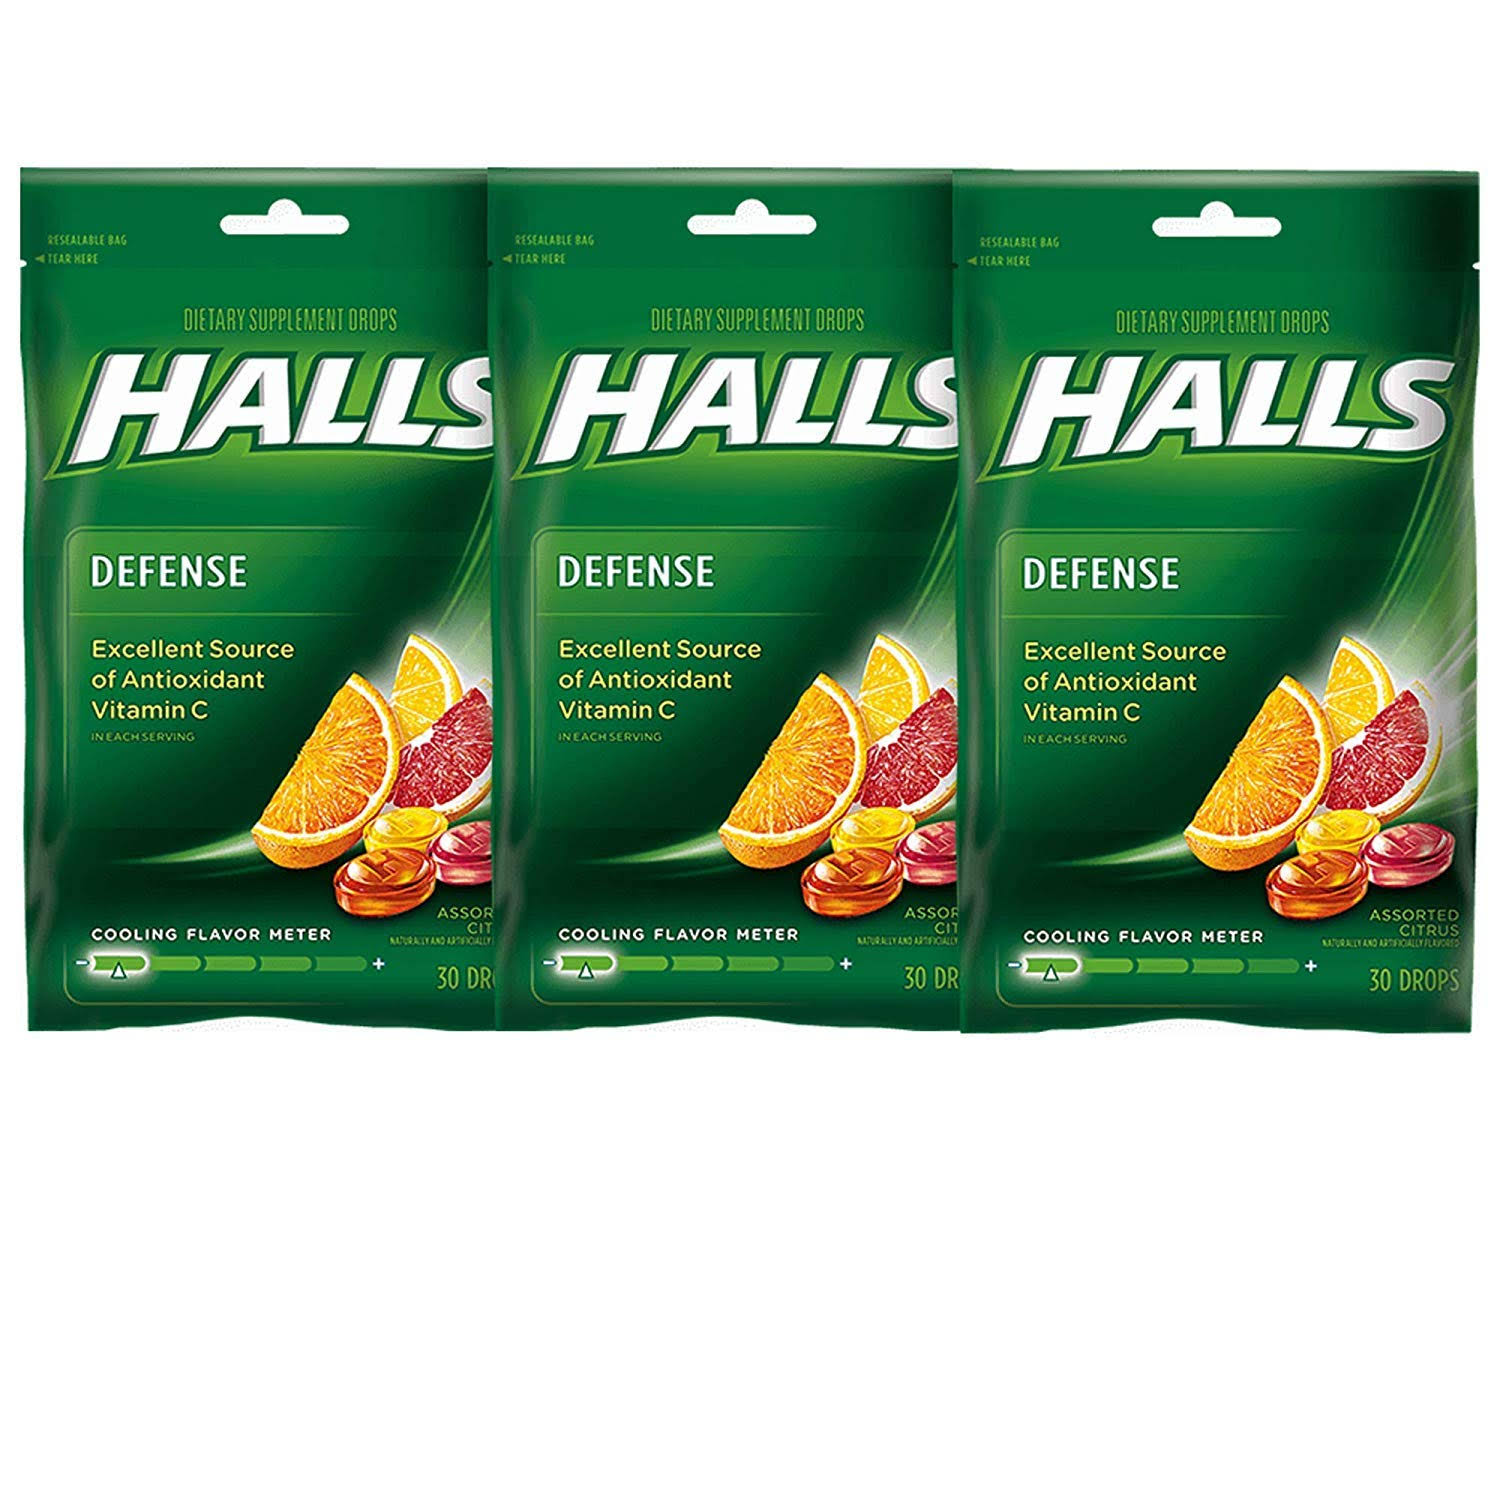 Halls Defense Vitamin C Assorted Citrus Supplement Drops - 30 Drops